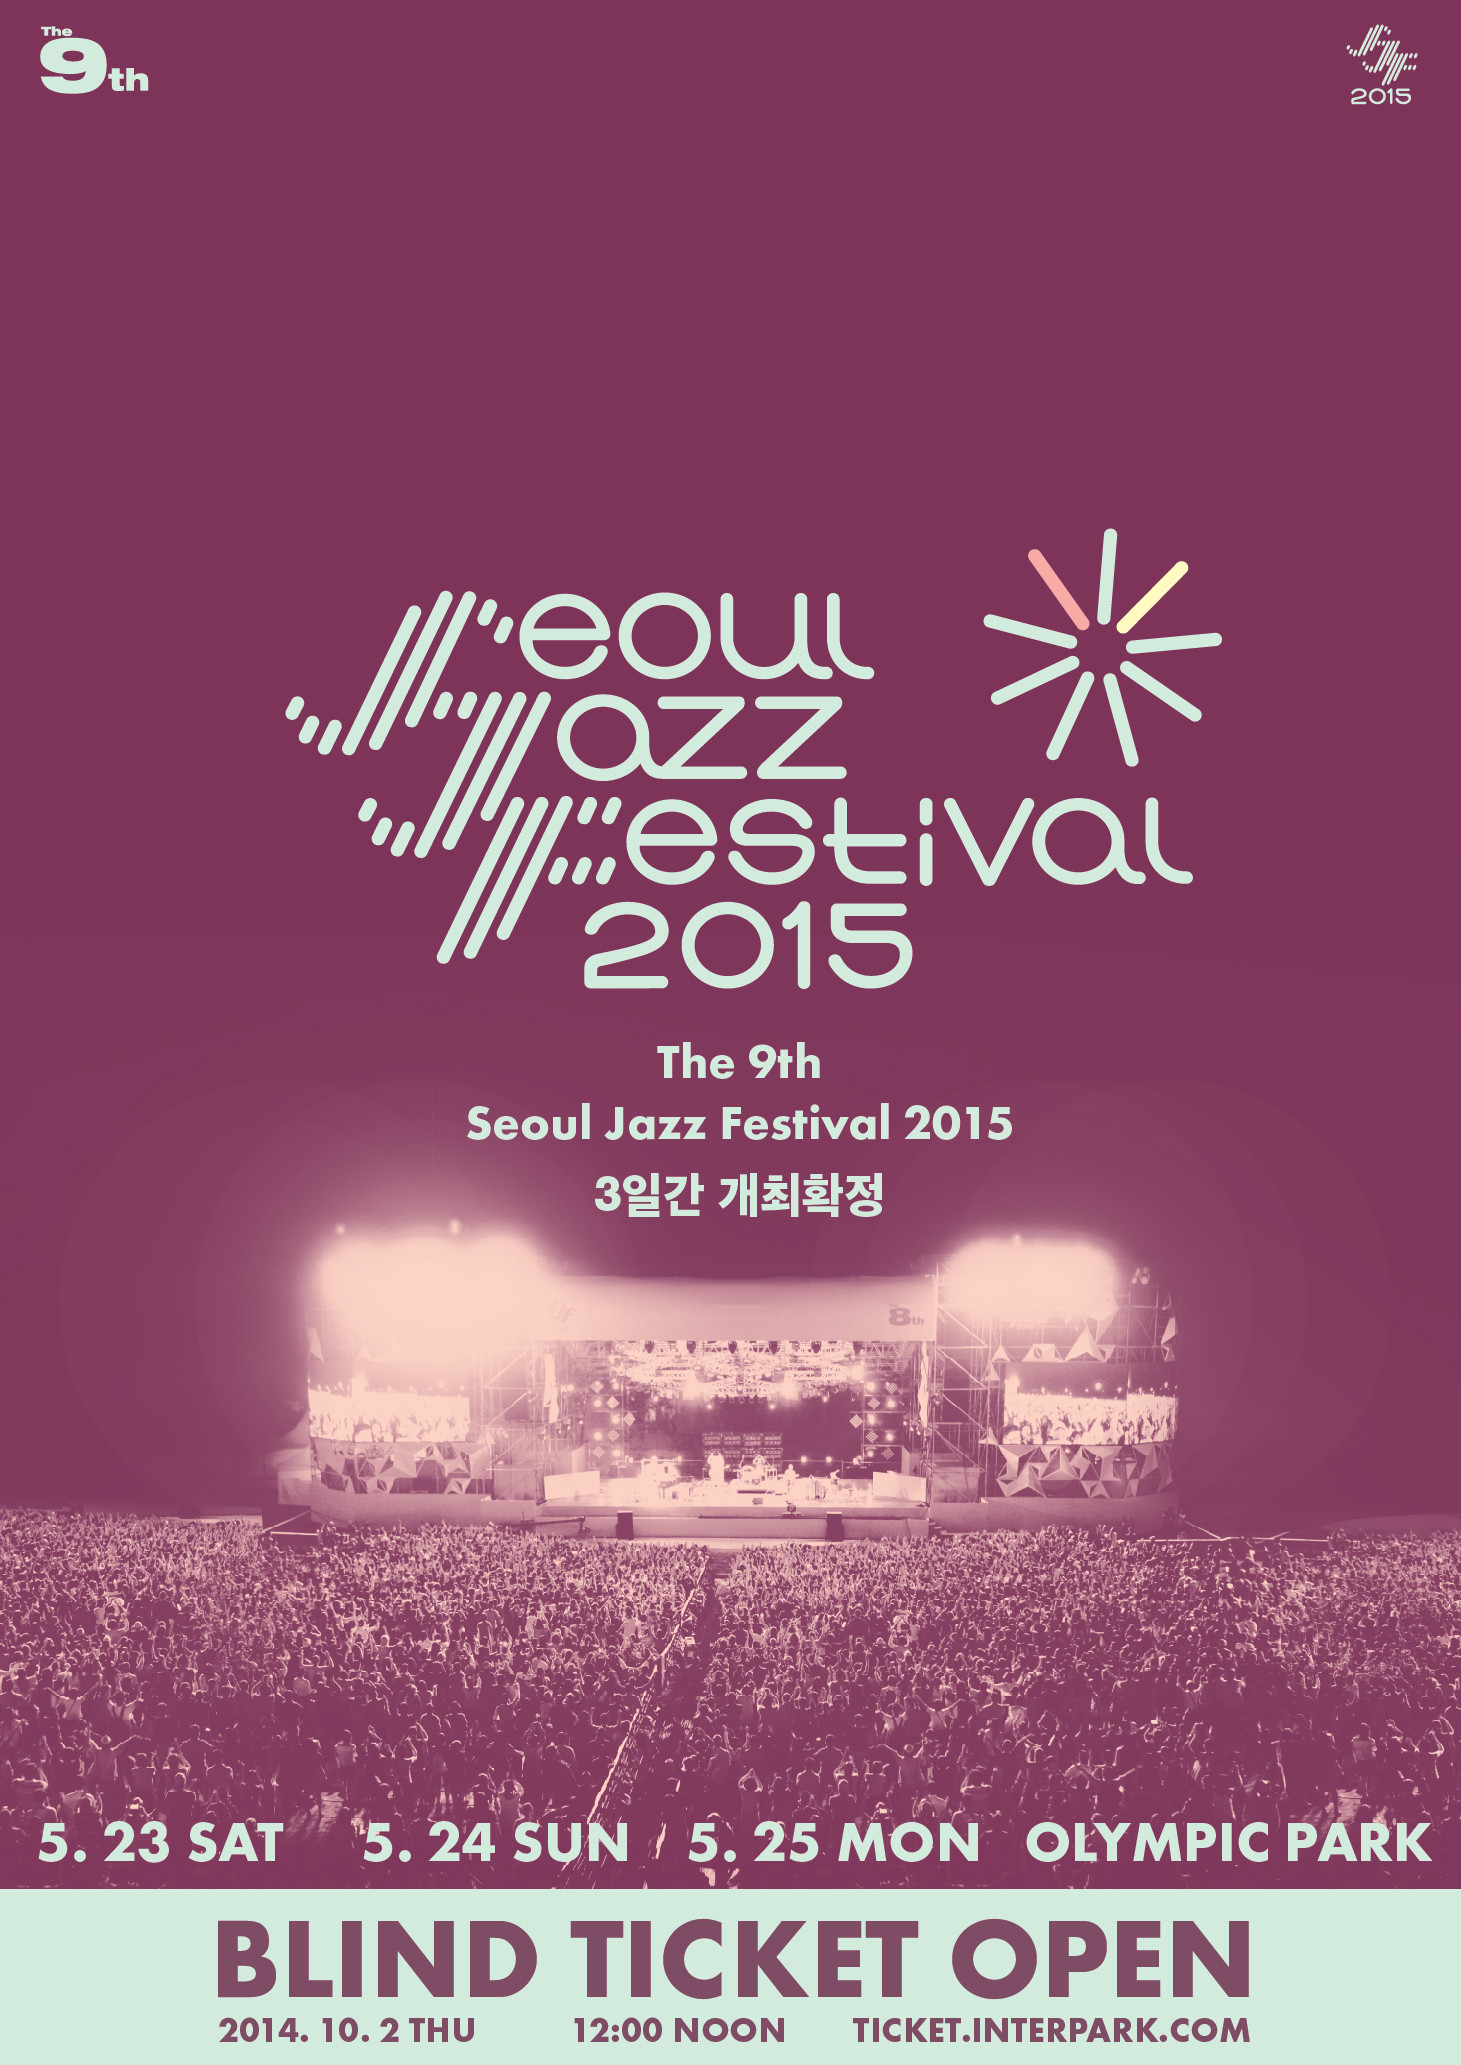 [예매공지] 제9회 서울재즈페스티벌2015 블라인드 티켓